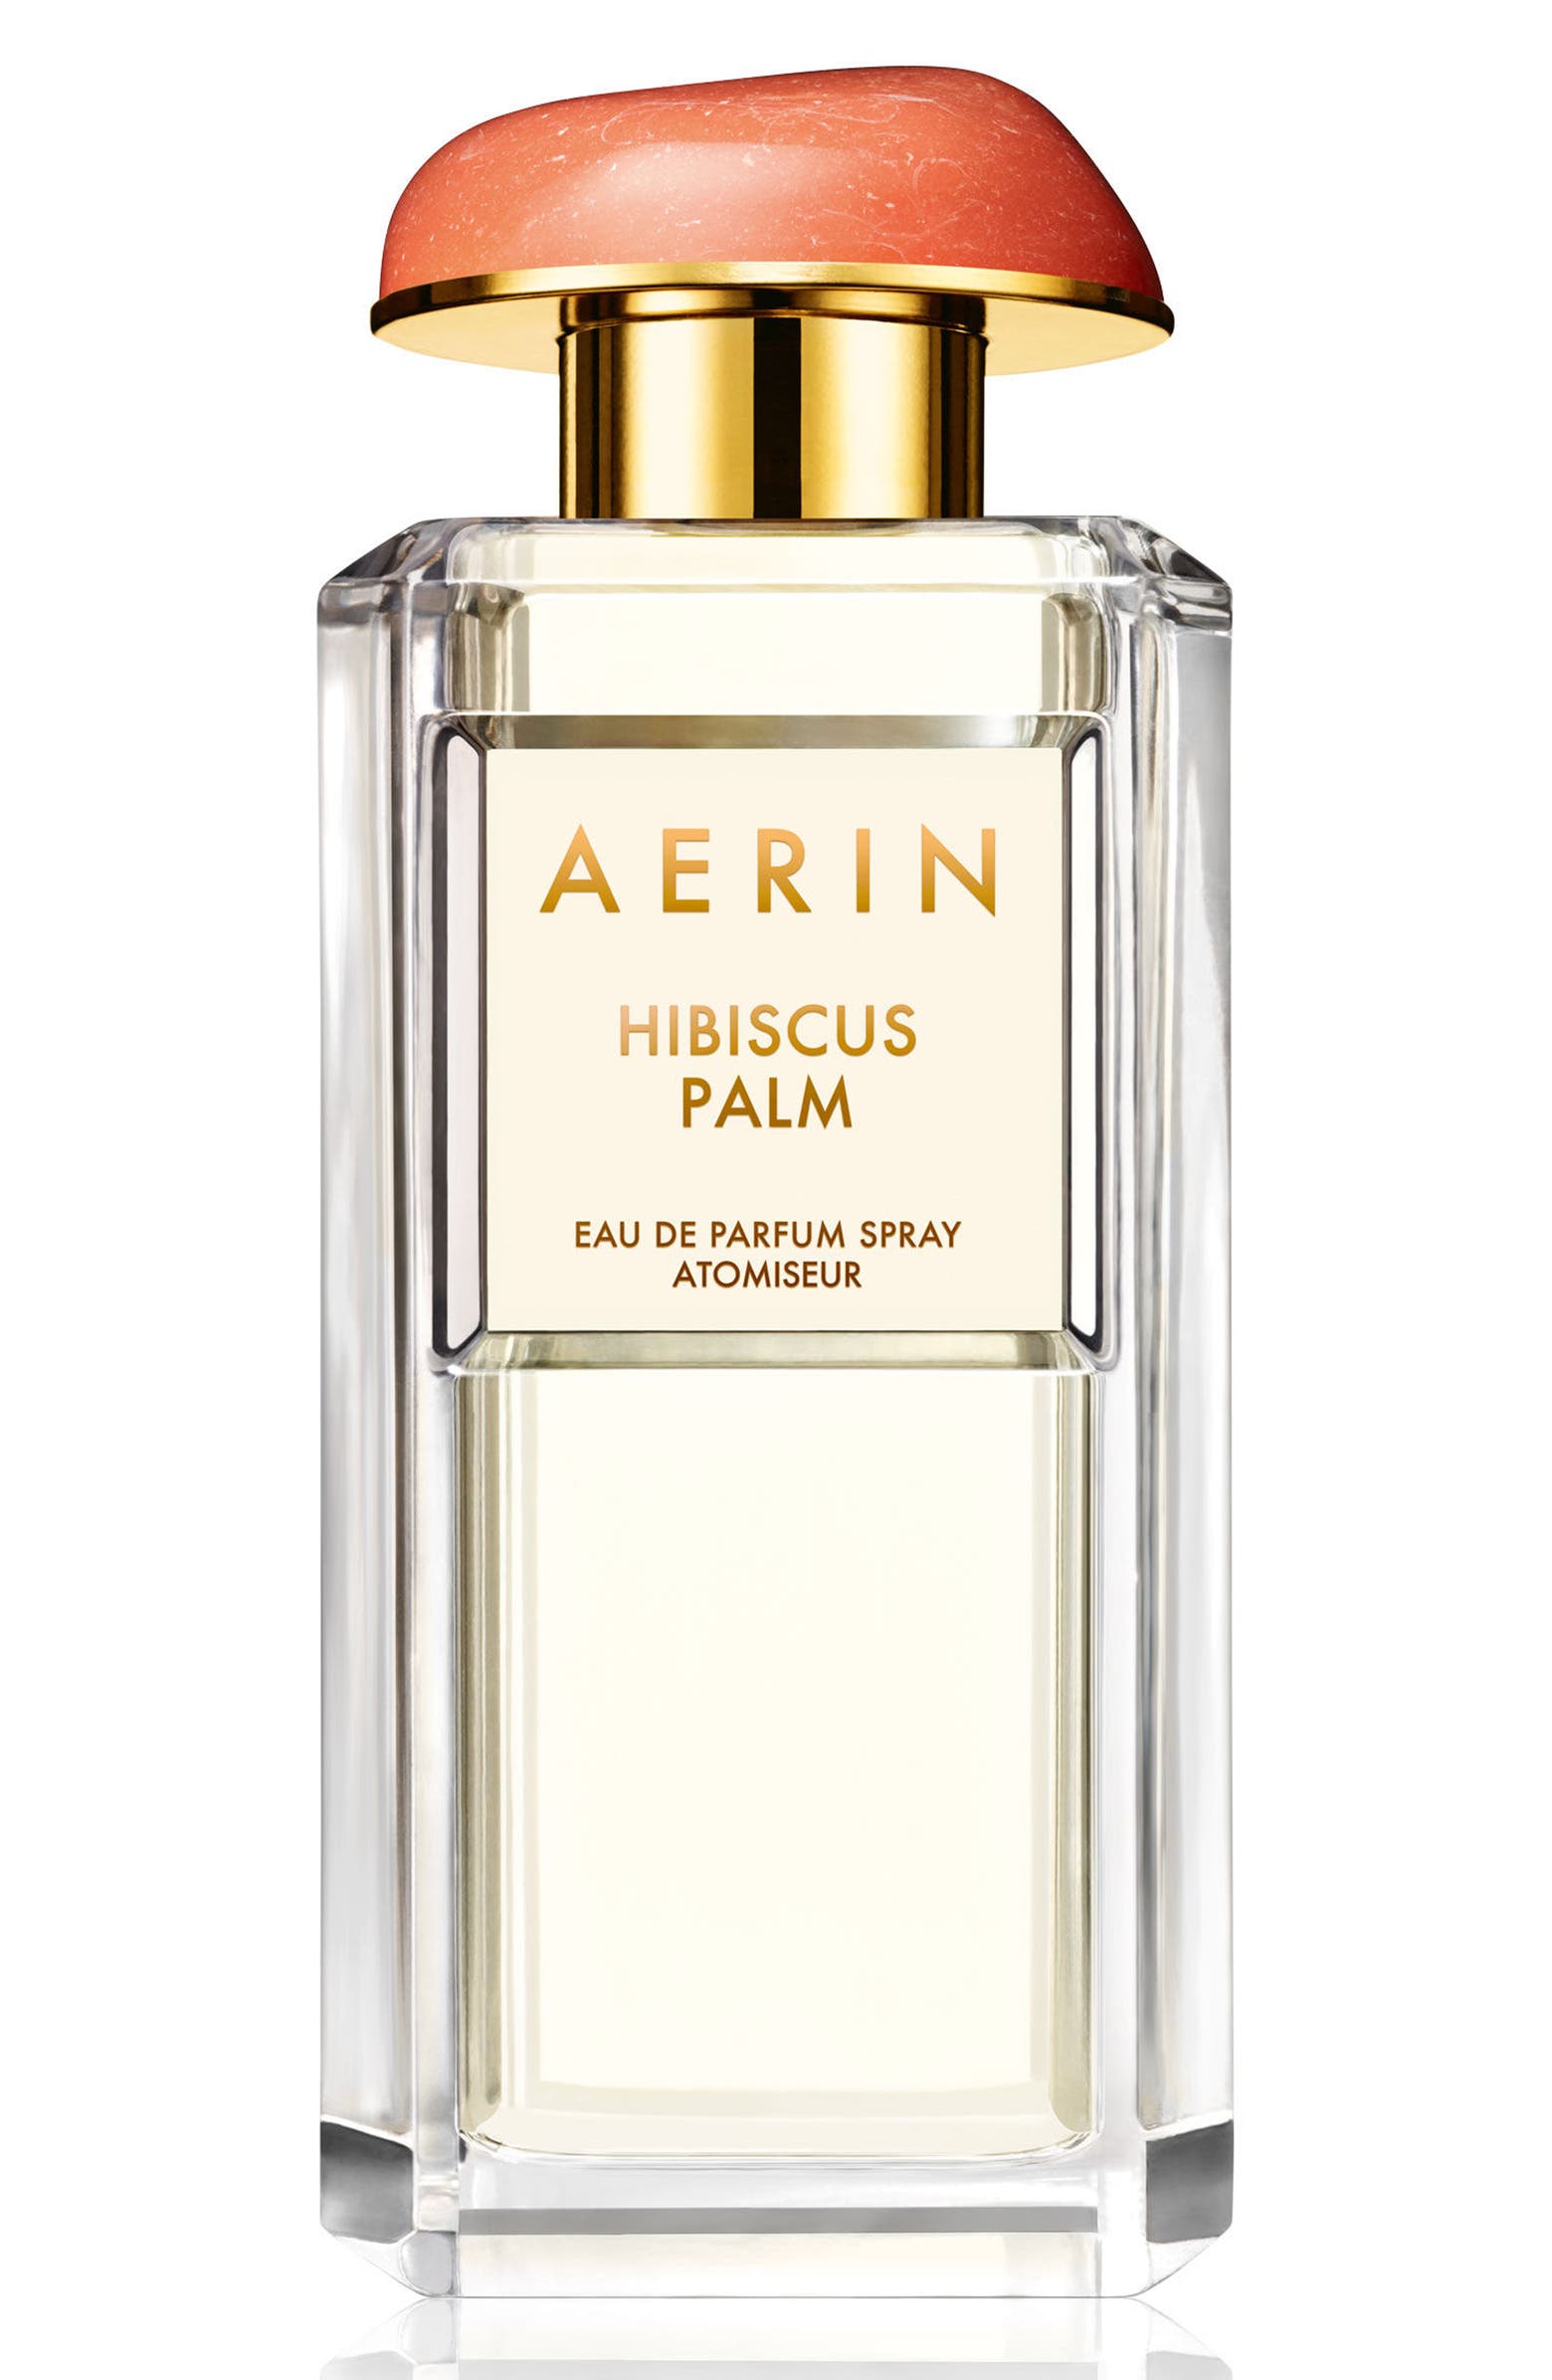 AERIN Beauty Hibiscus Palm Eau de Parfum